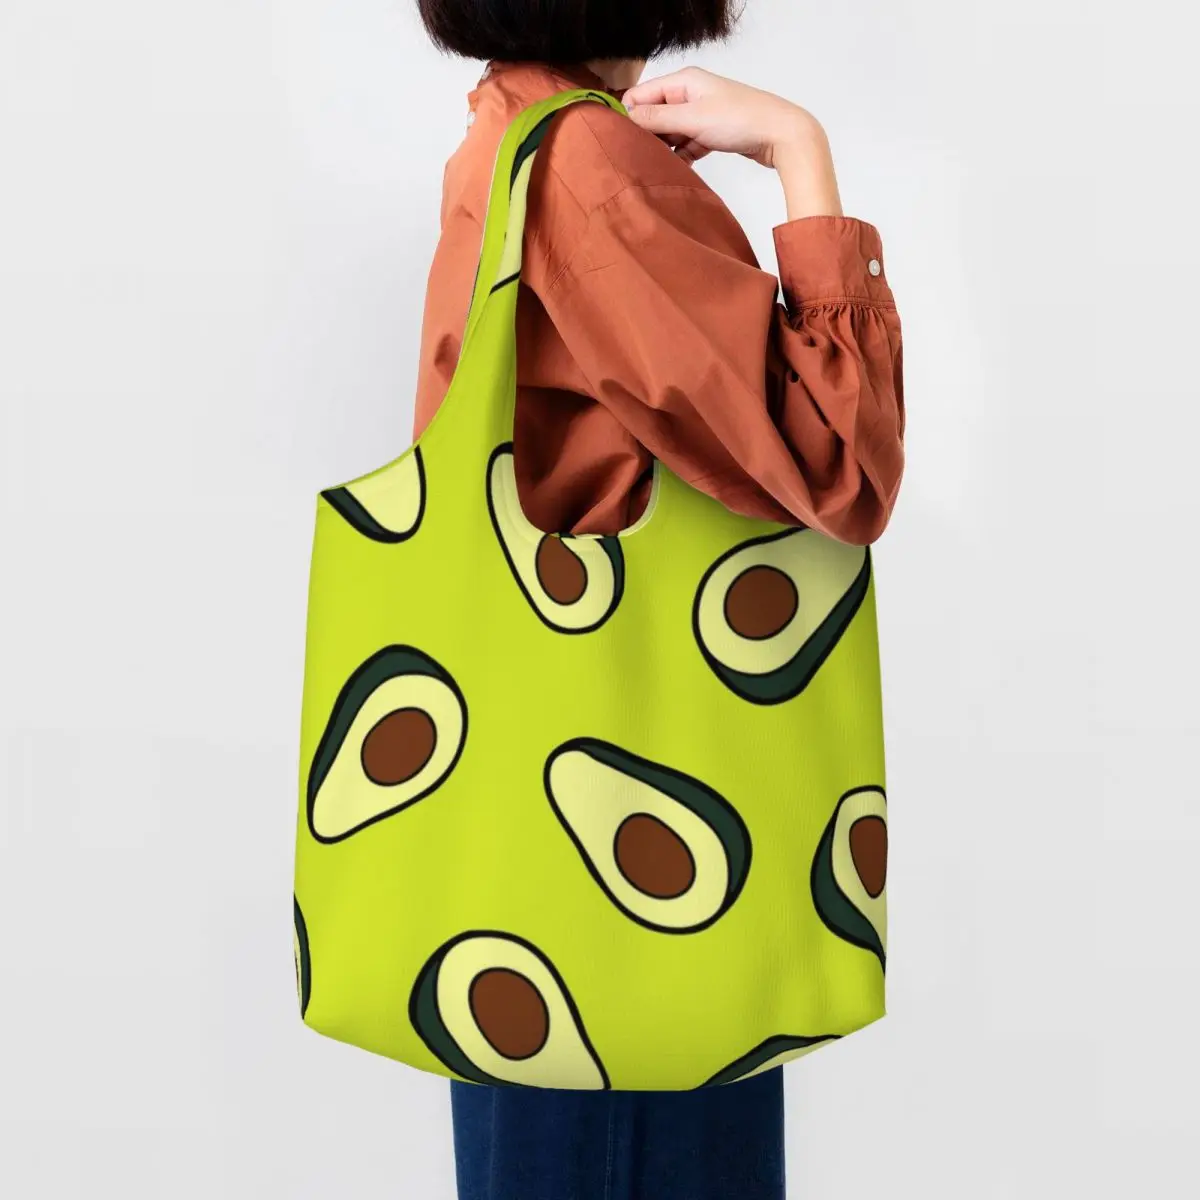 

Сумка-шоппер с рисунком авокадо, хипстерские женские сумки с принтом зеленого фрукта, стильная тканевая дорожная сумка-тоут на плечо